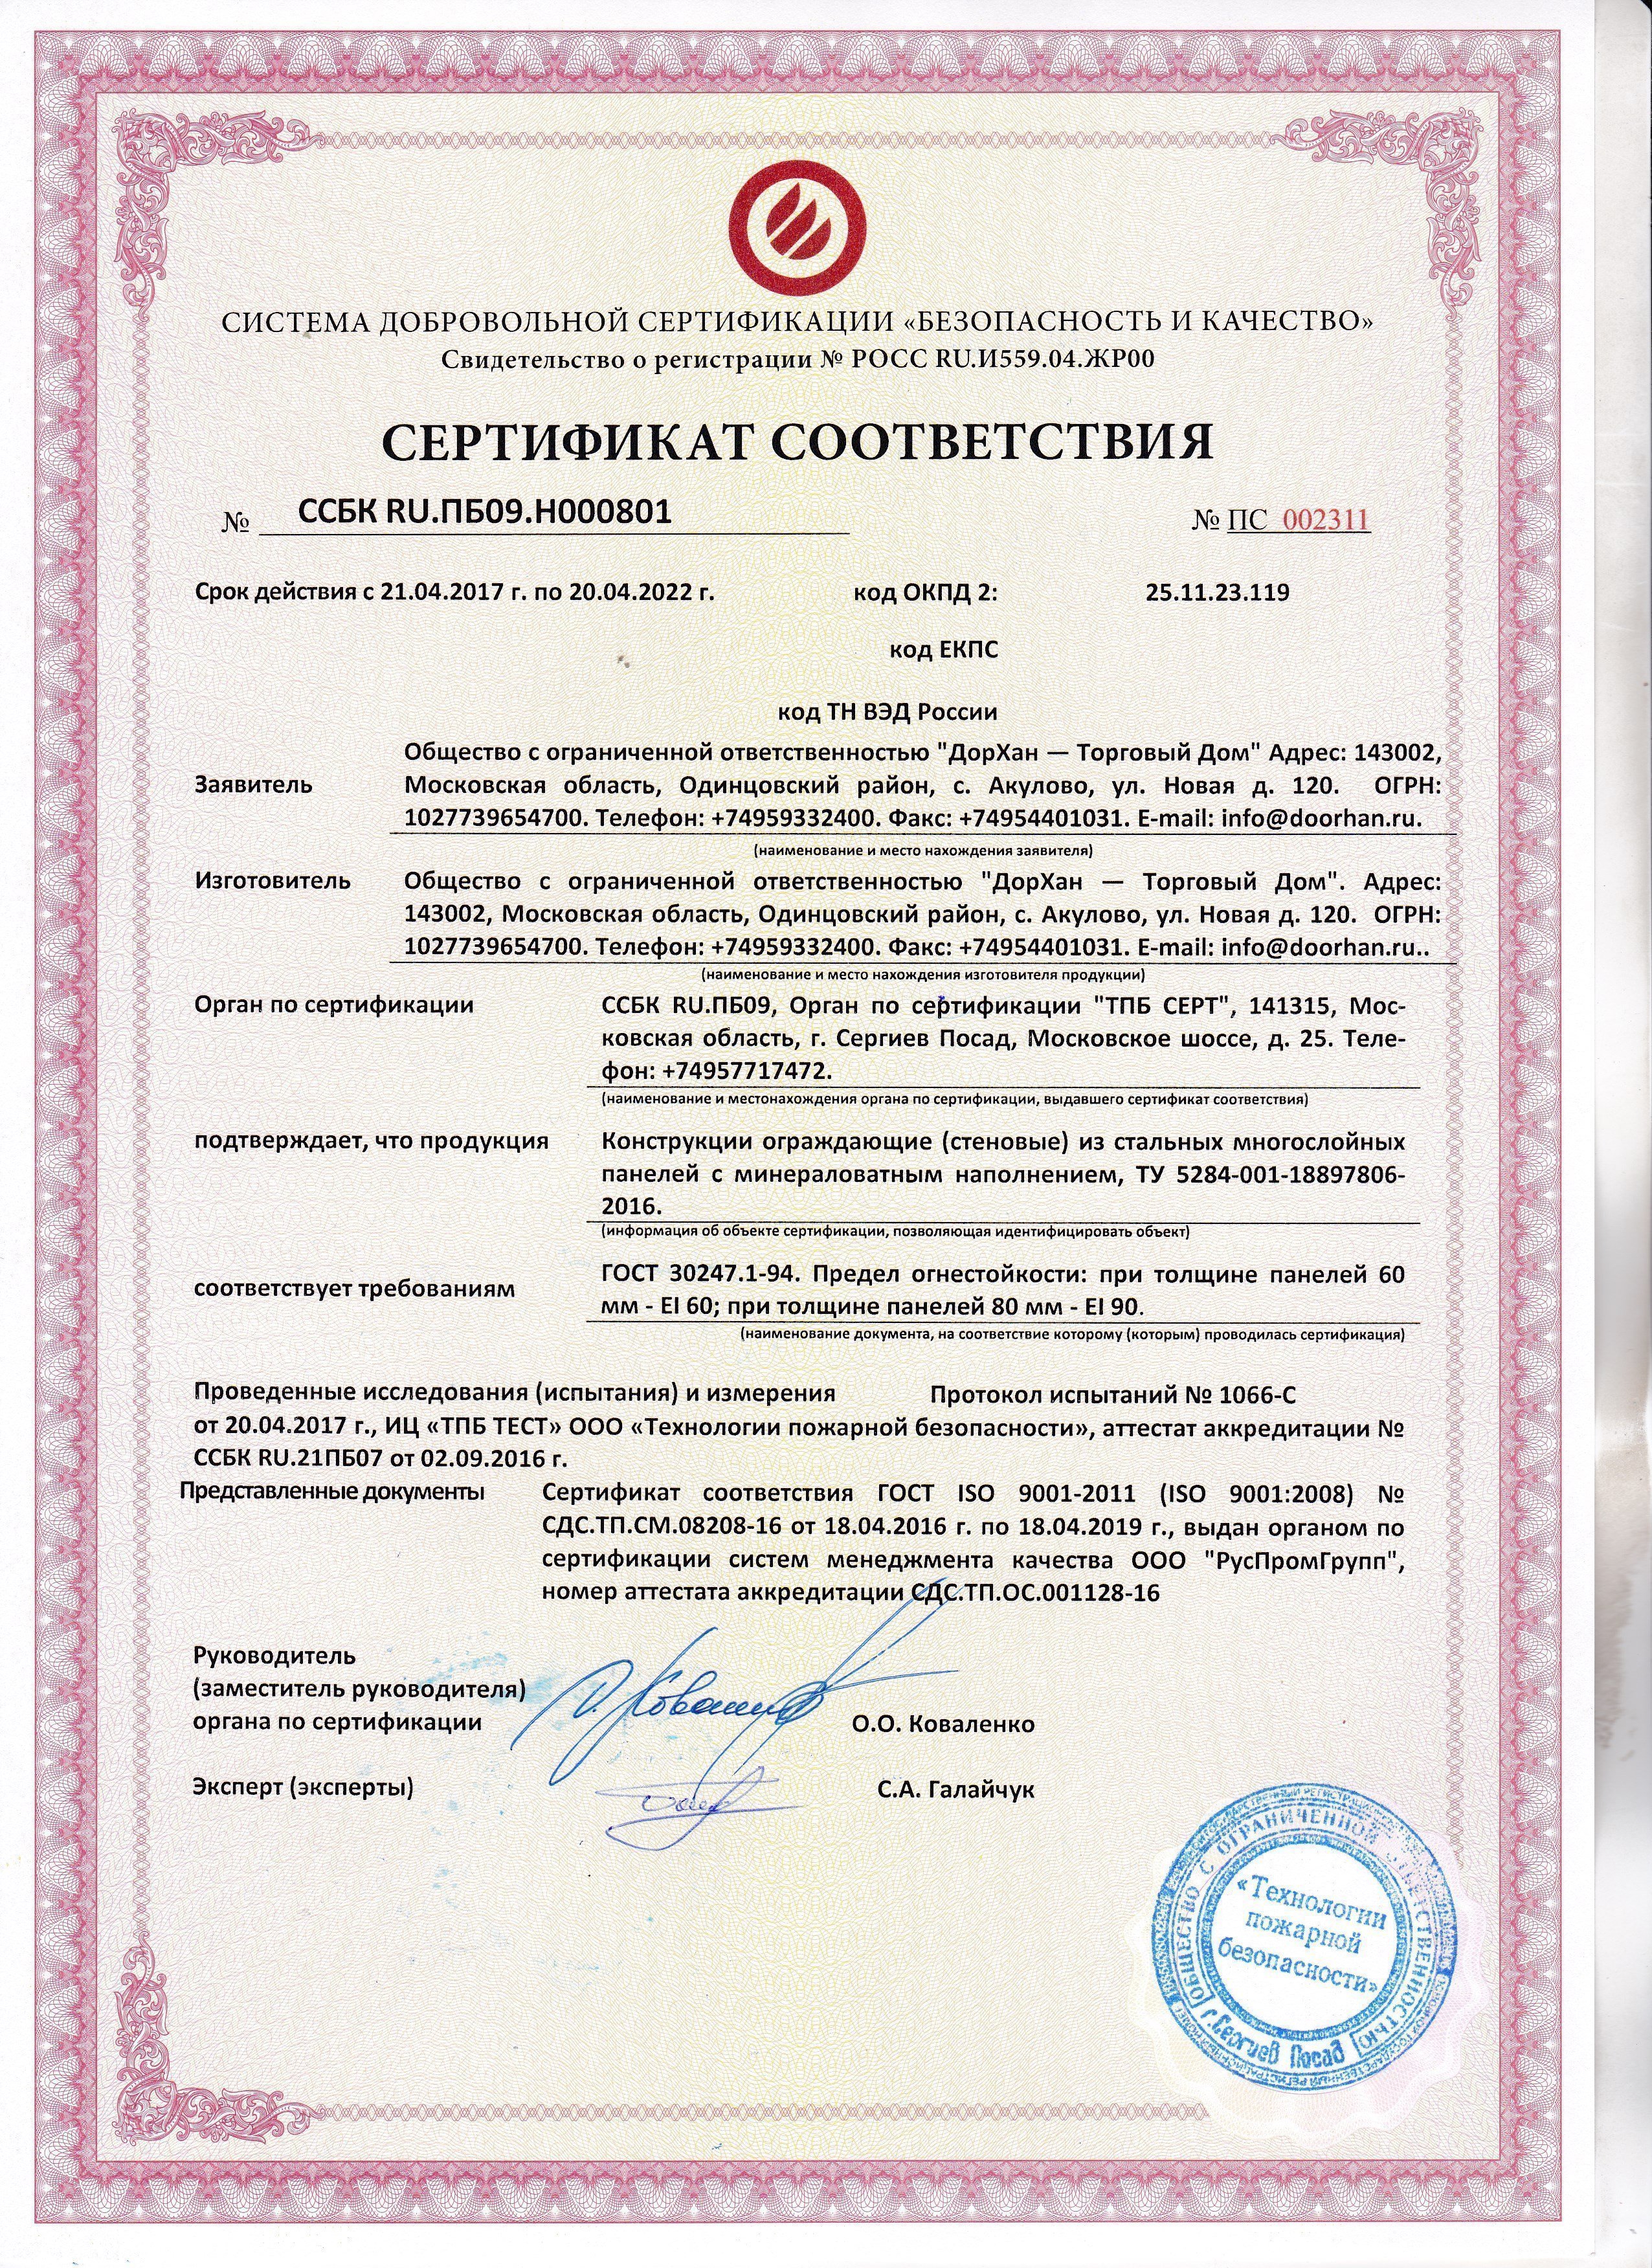 Сертификат соответствия на ограждающие конструкции из стальных многослойных панелей